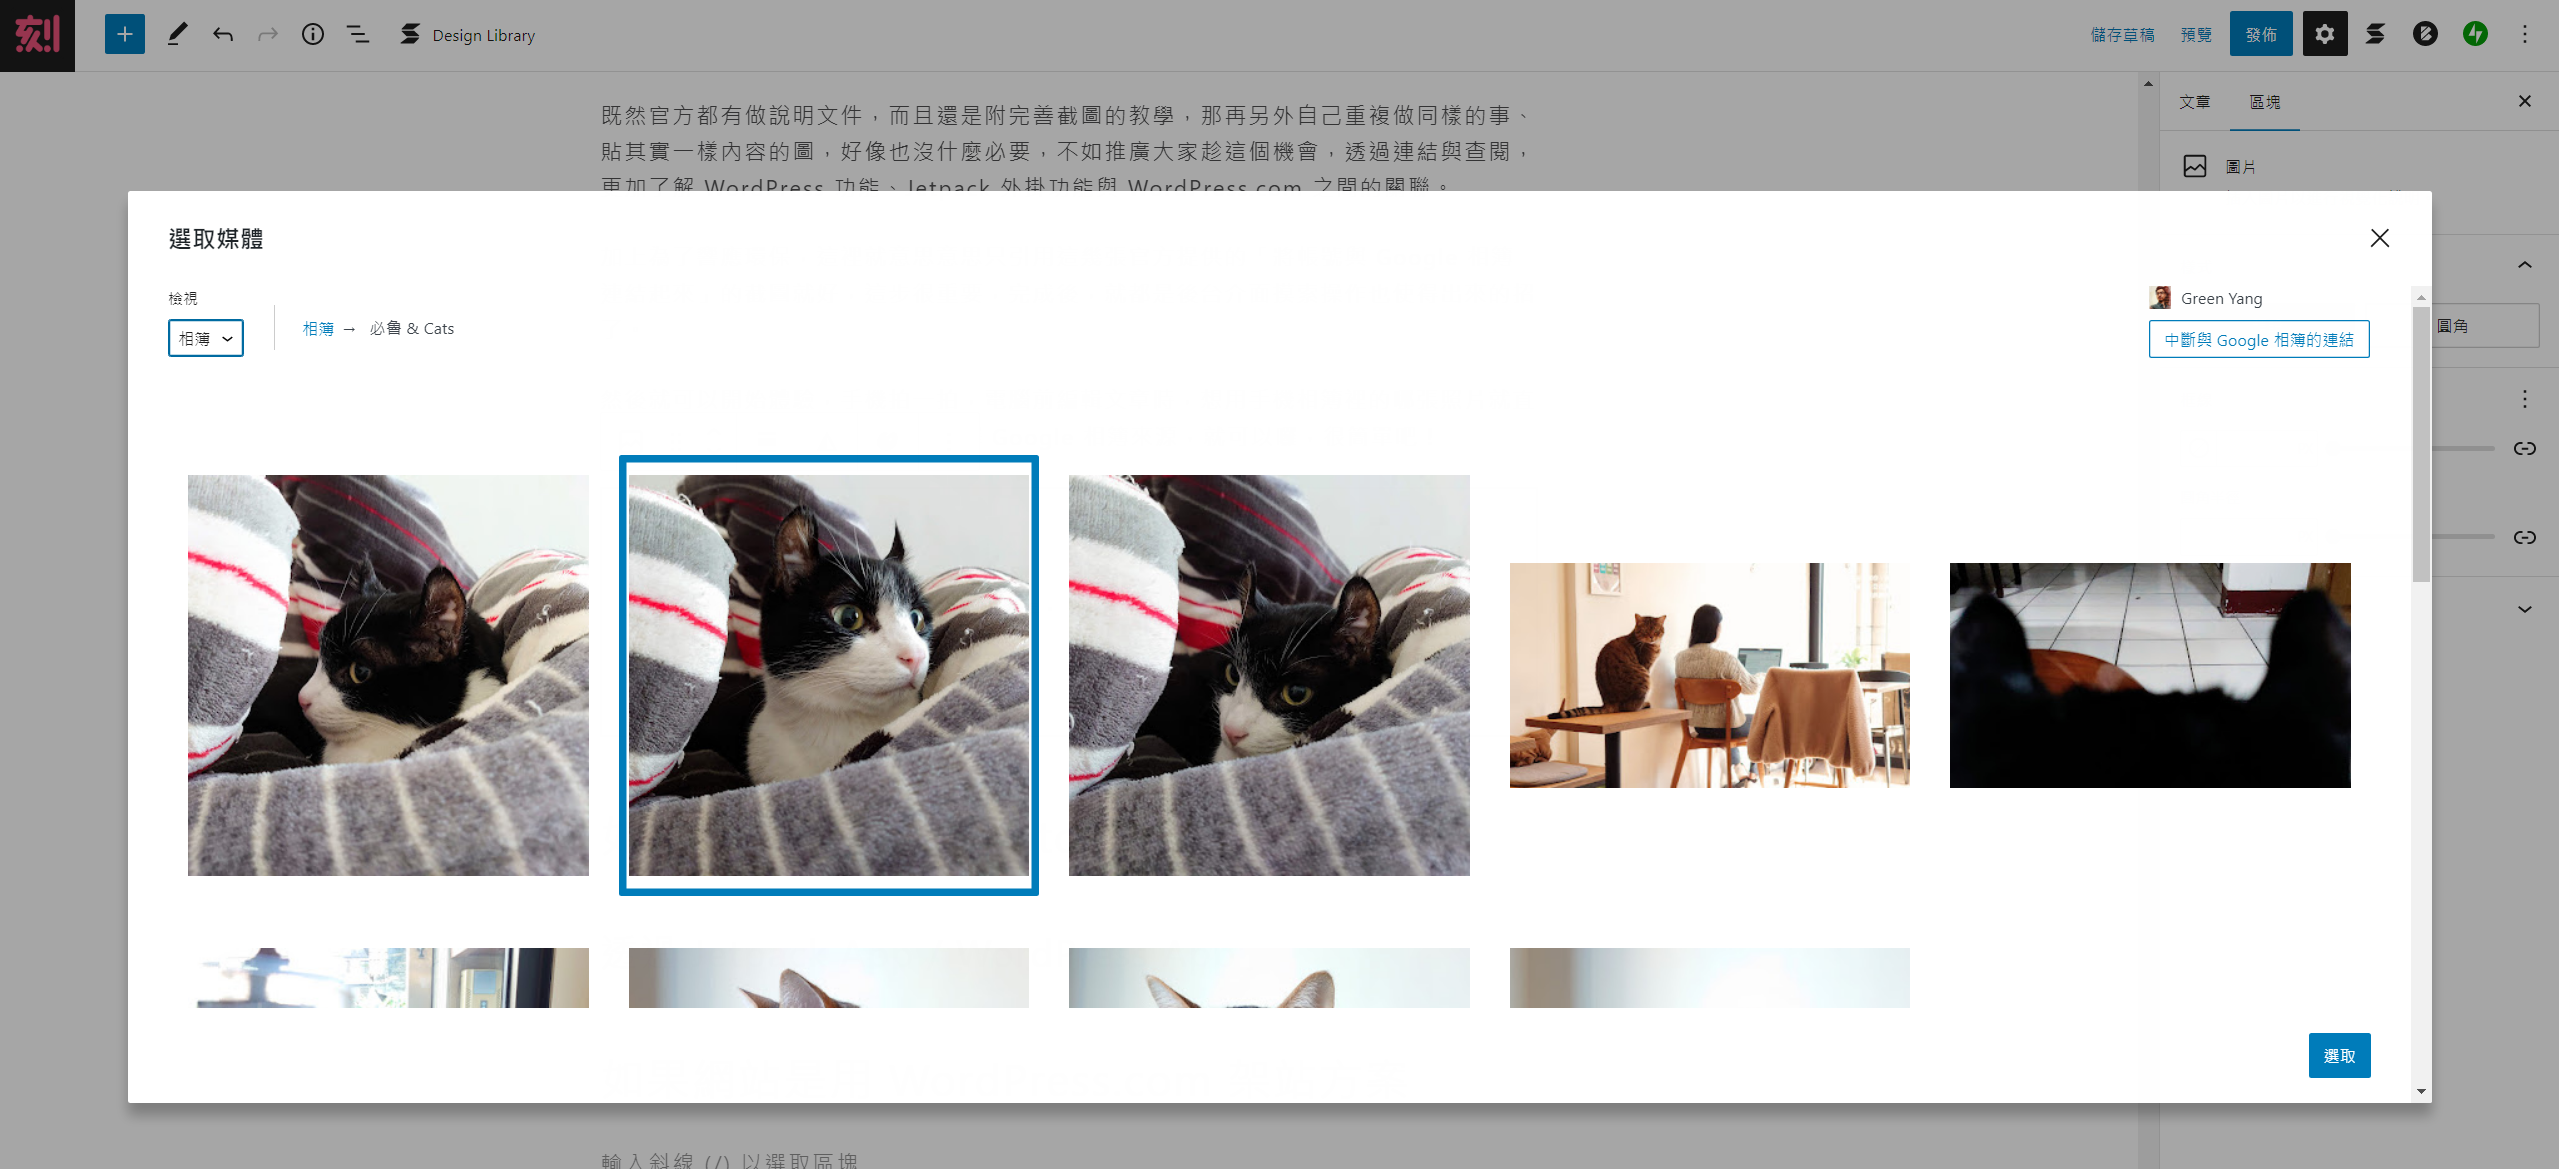 在圖片區塊新增圖片時，選擇 Google 相簿來源，即會顯示你的 Google 相簿圖庫，還能選擇裡面已建立的相簿，再選圖片。